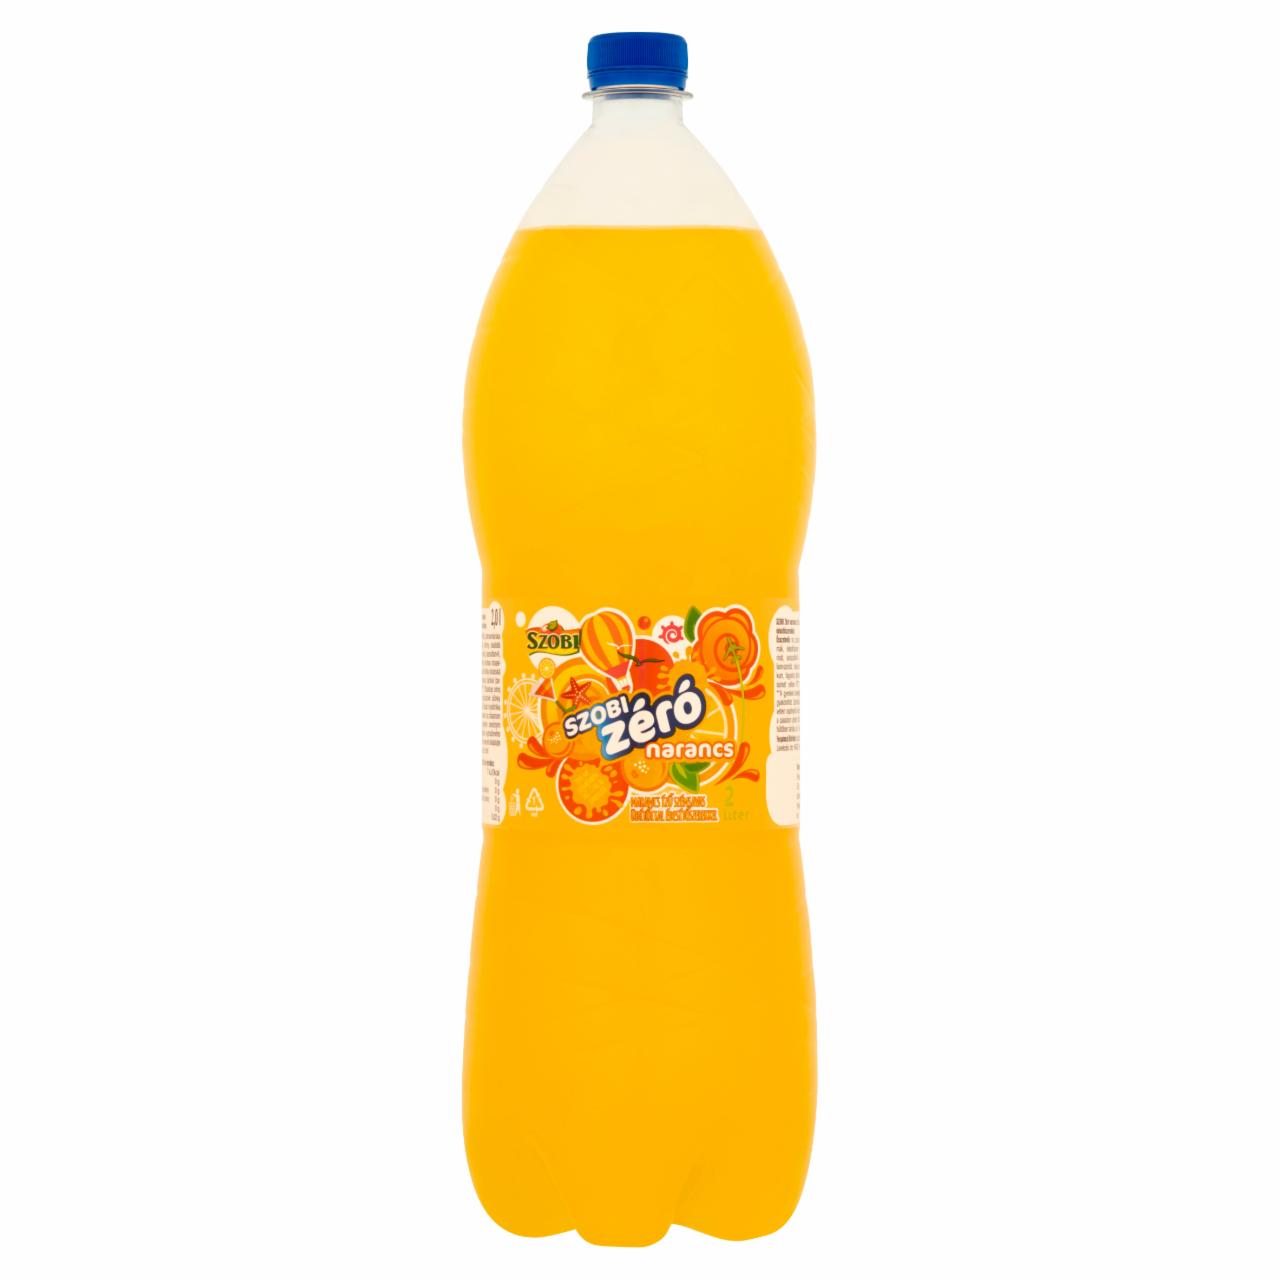 Képek - Szobi Zéró narancs ízű szénsavas üdítőital édesítőszerekkel 2 l